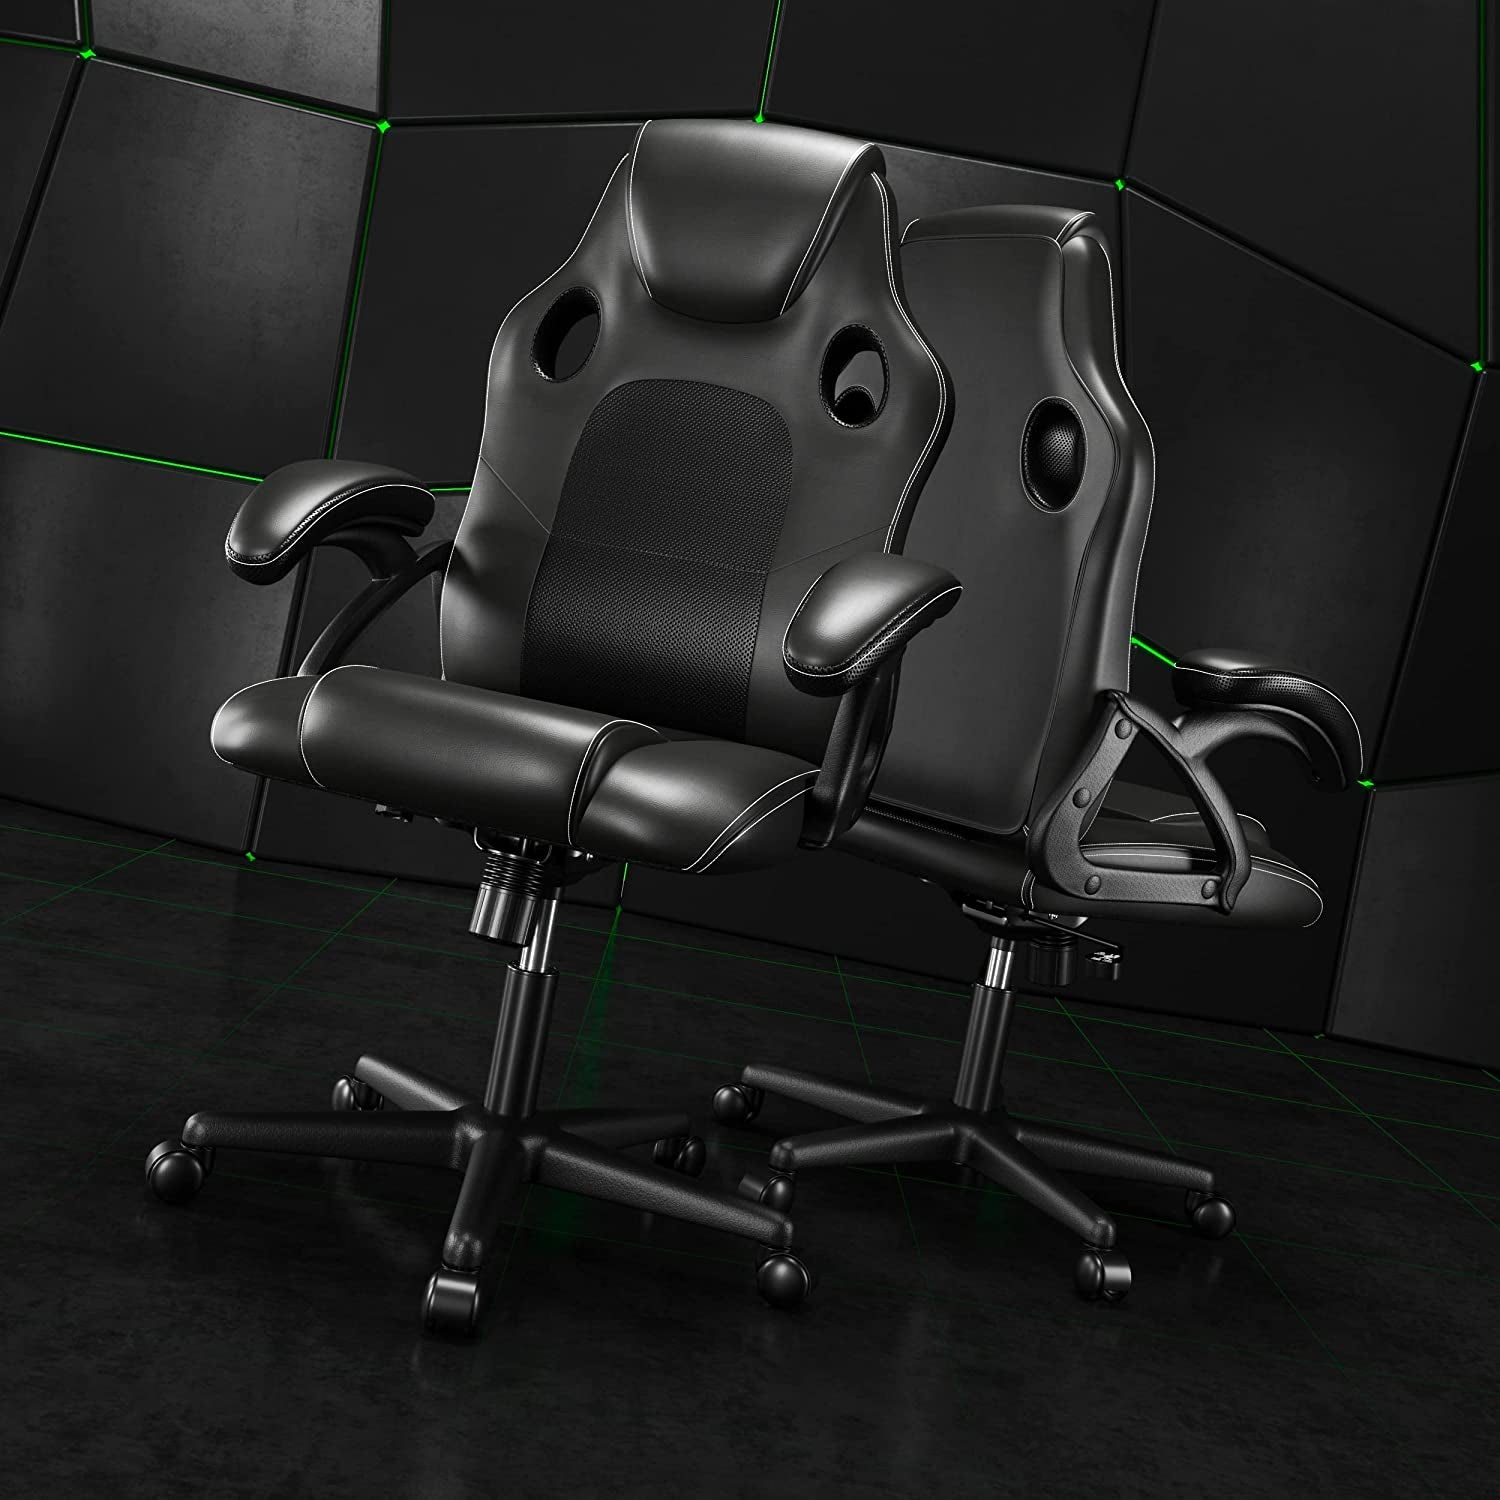 .Gaming Chair Office Chair Swivel Chair Computer Chair Work Chair Desk Chair Ergonomic Chair Racing Chair Leather Chair PC Gaming Chair (Black)